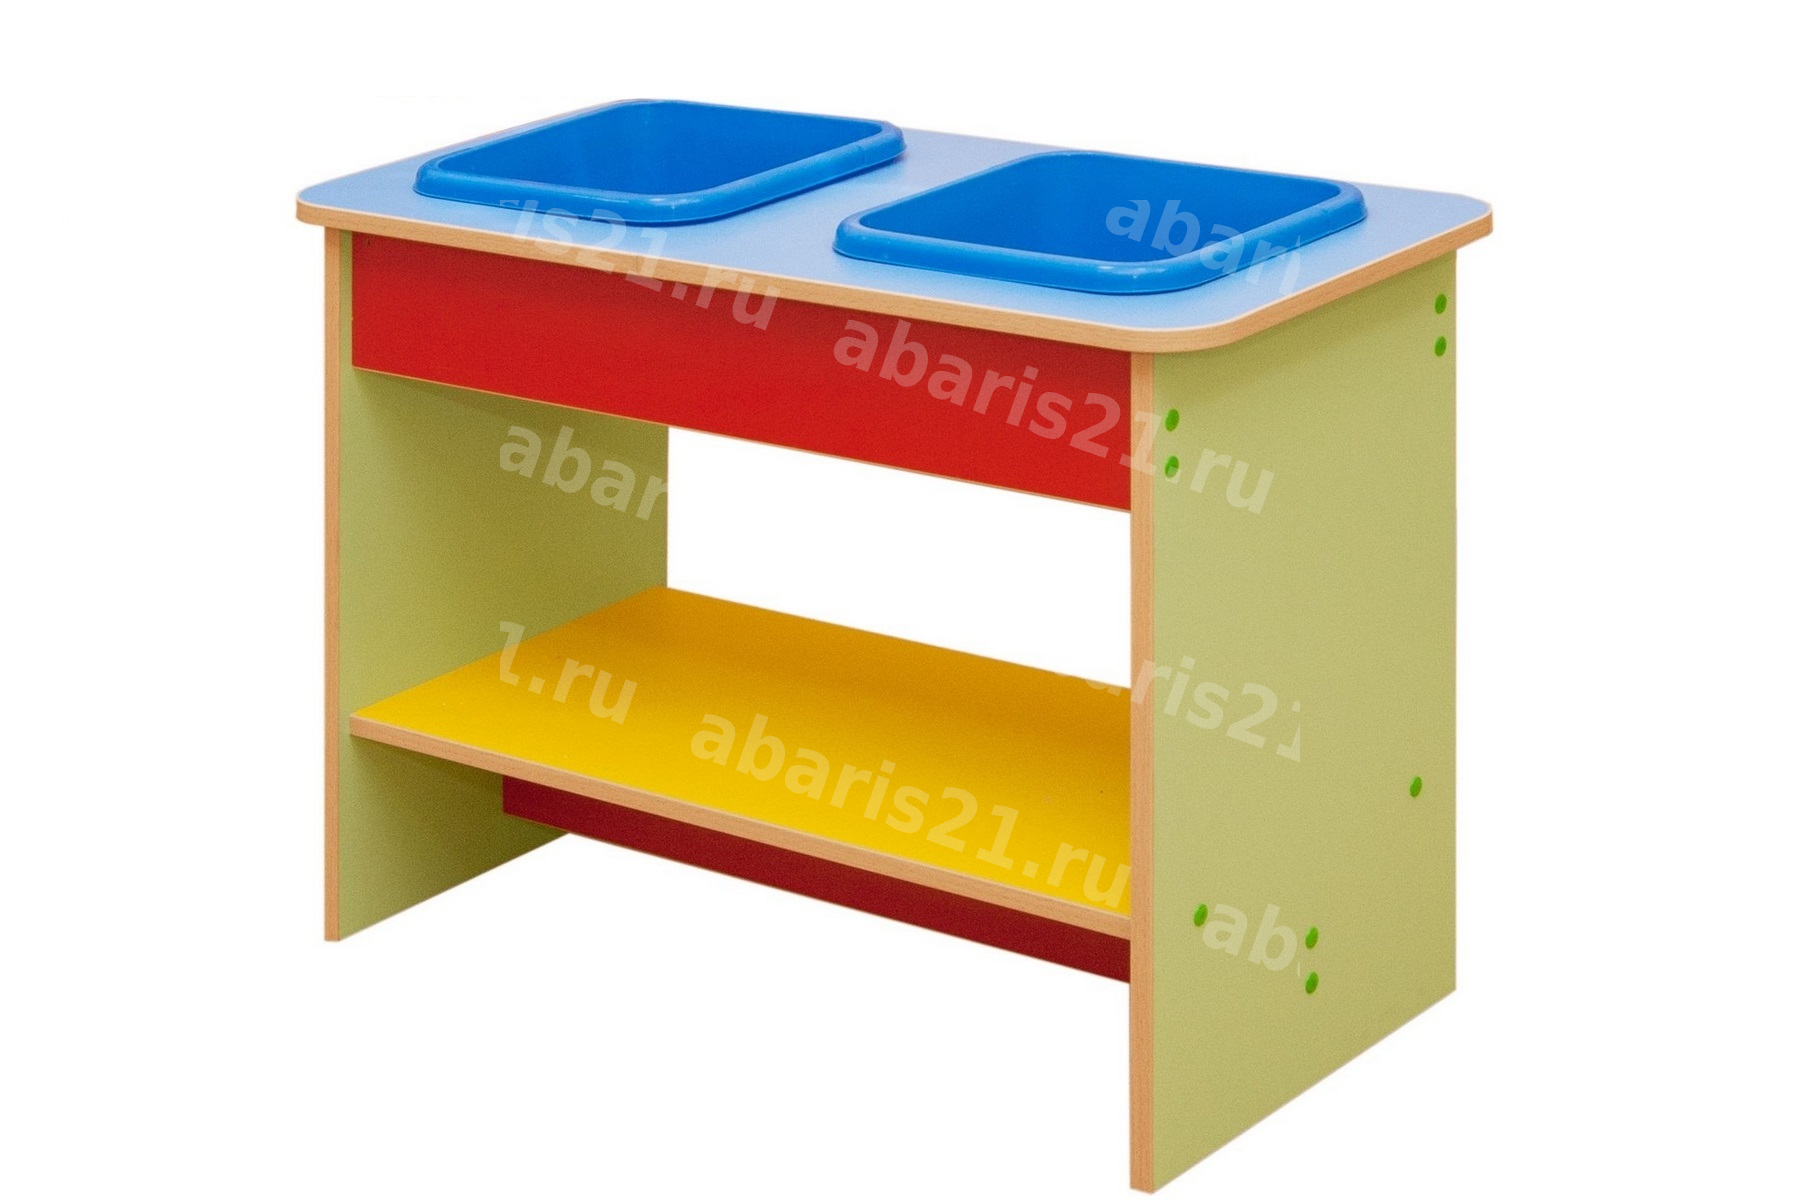 Мебель детская игровая ЦЕНТР ПЕСКА И ВОДЫ (модель 2) - Абарис